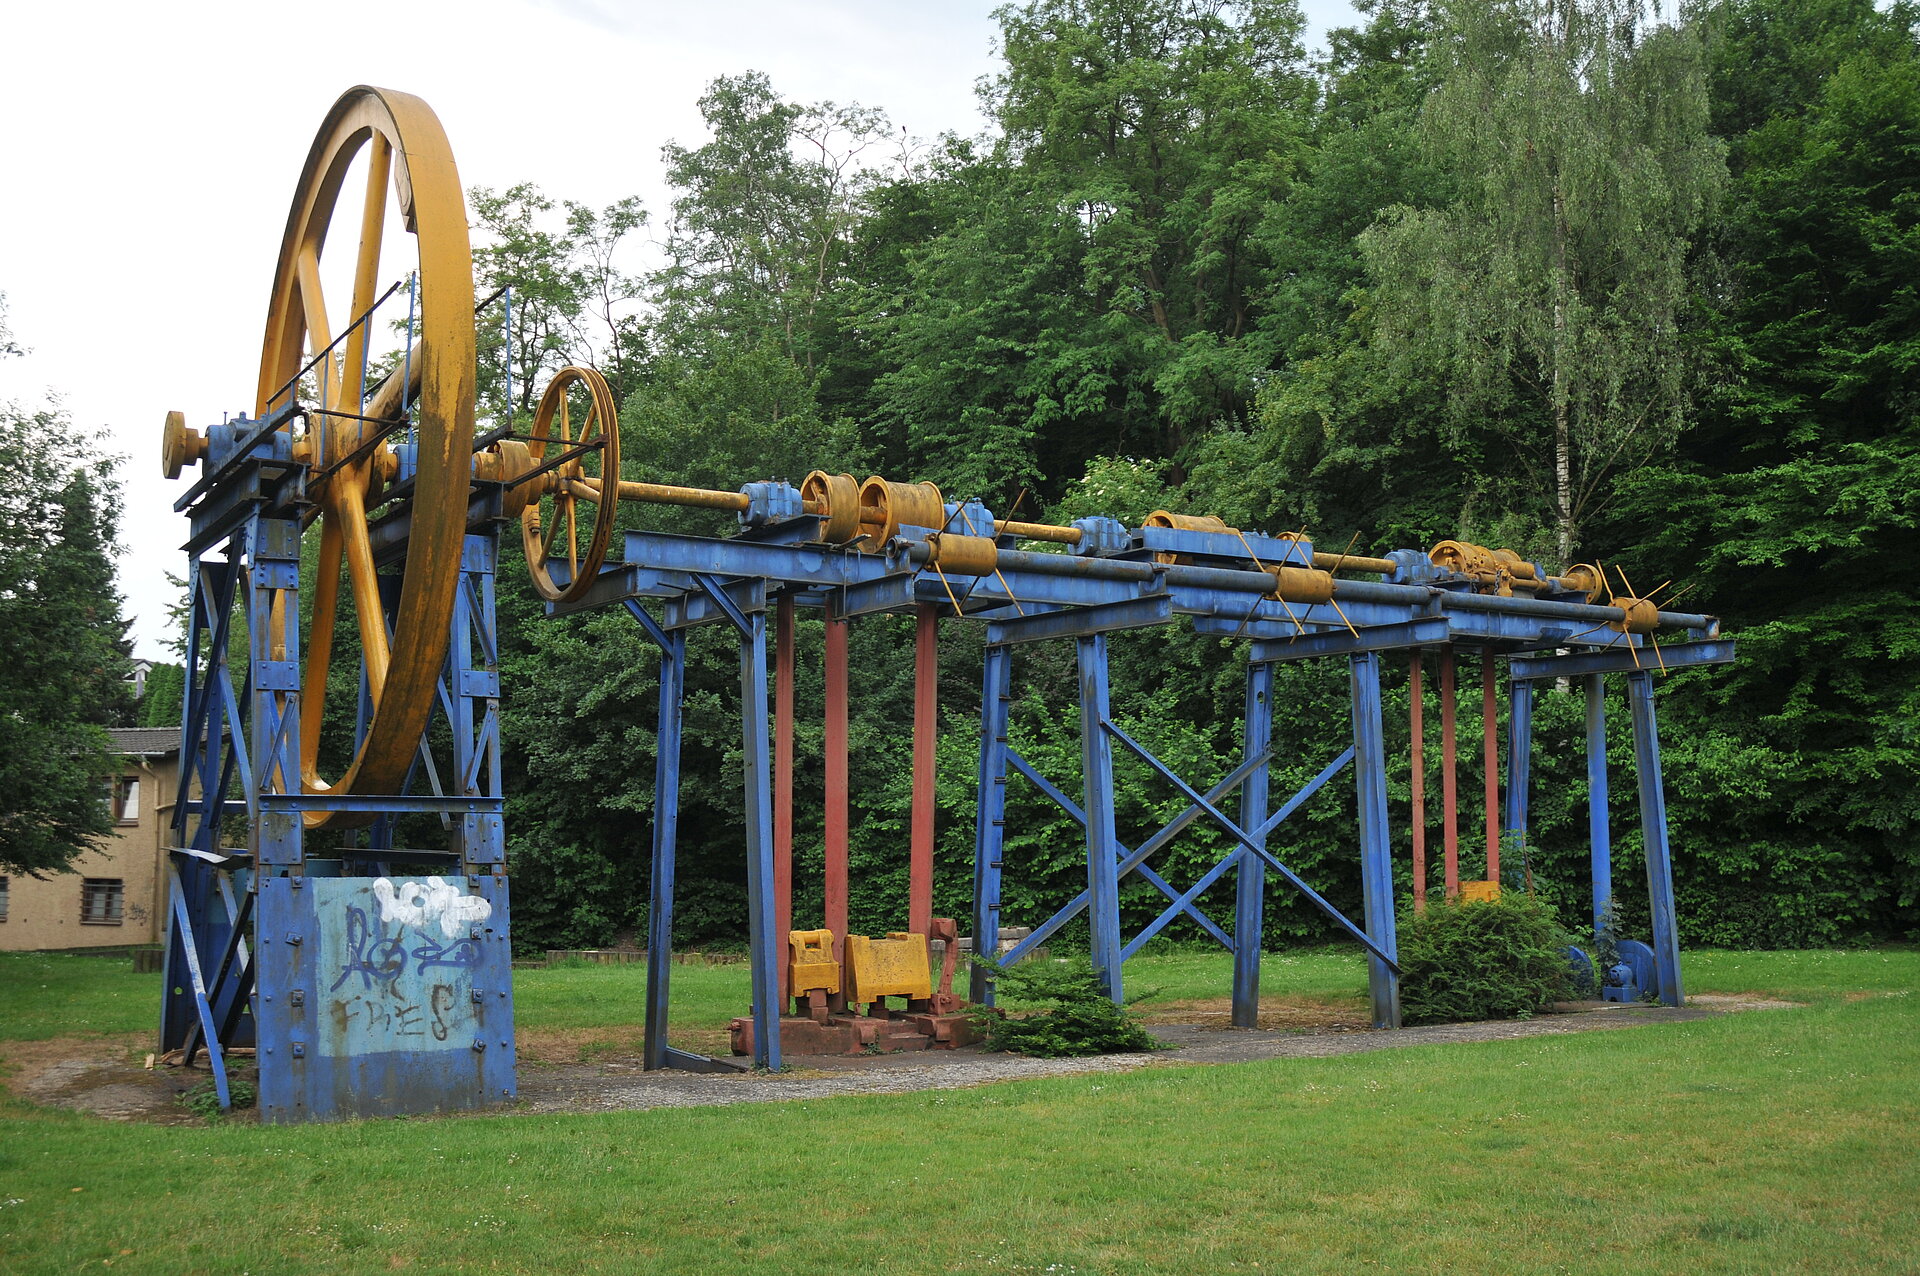 Die Firma Stahlhammer Bommern in Witten  fertigte bis 1983 Kranhaken. Die in einer Grünanlage in Witten-Bommern unweit der Ruhr stehende Transmission erinnert an die 1911 gegründete Firma.